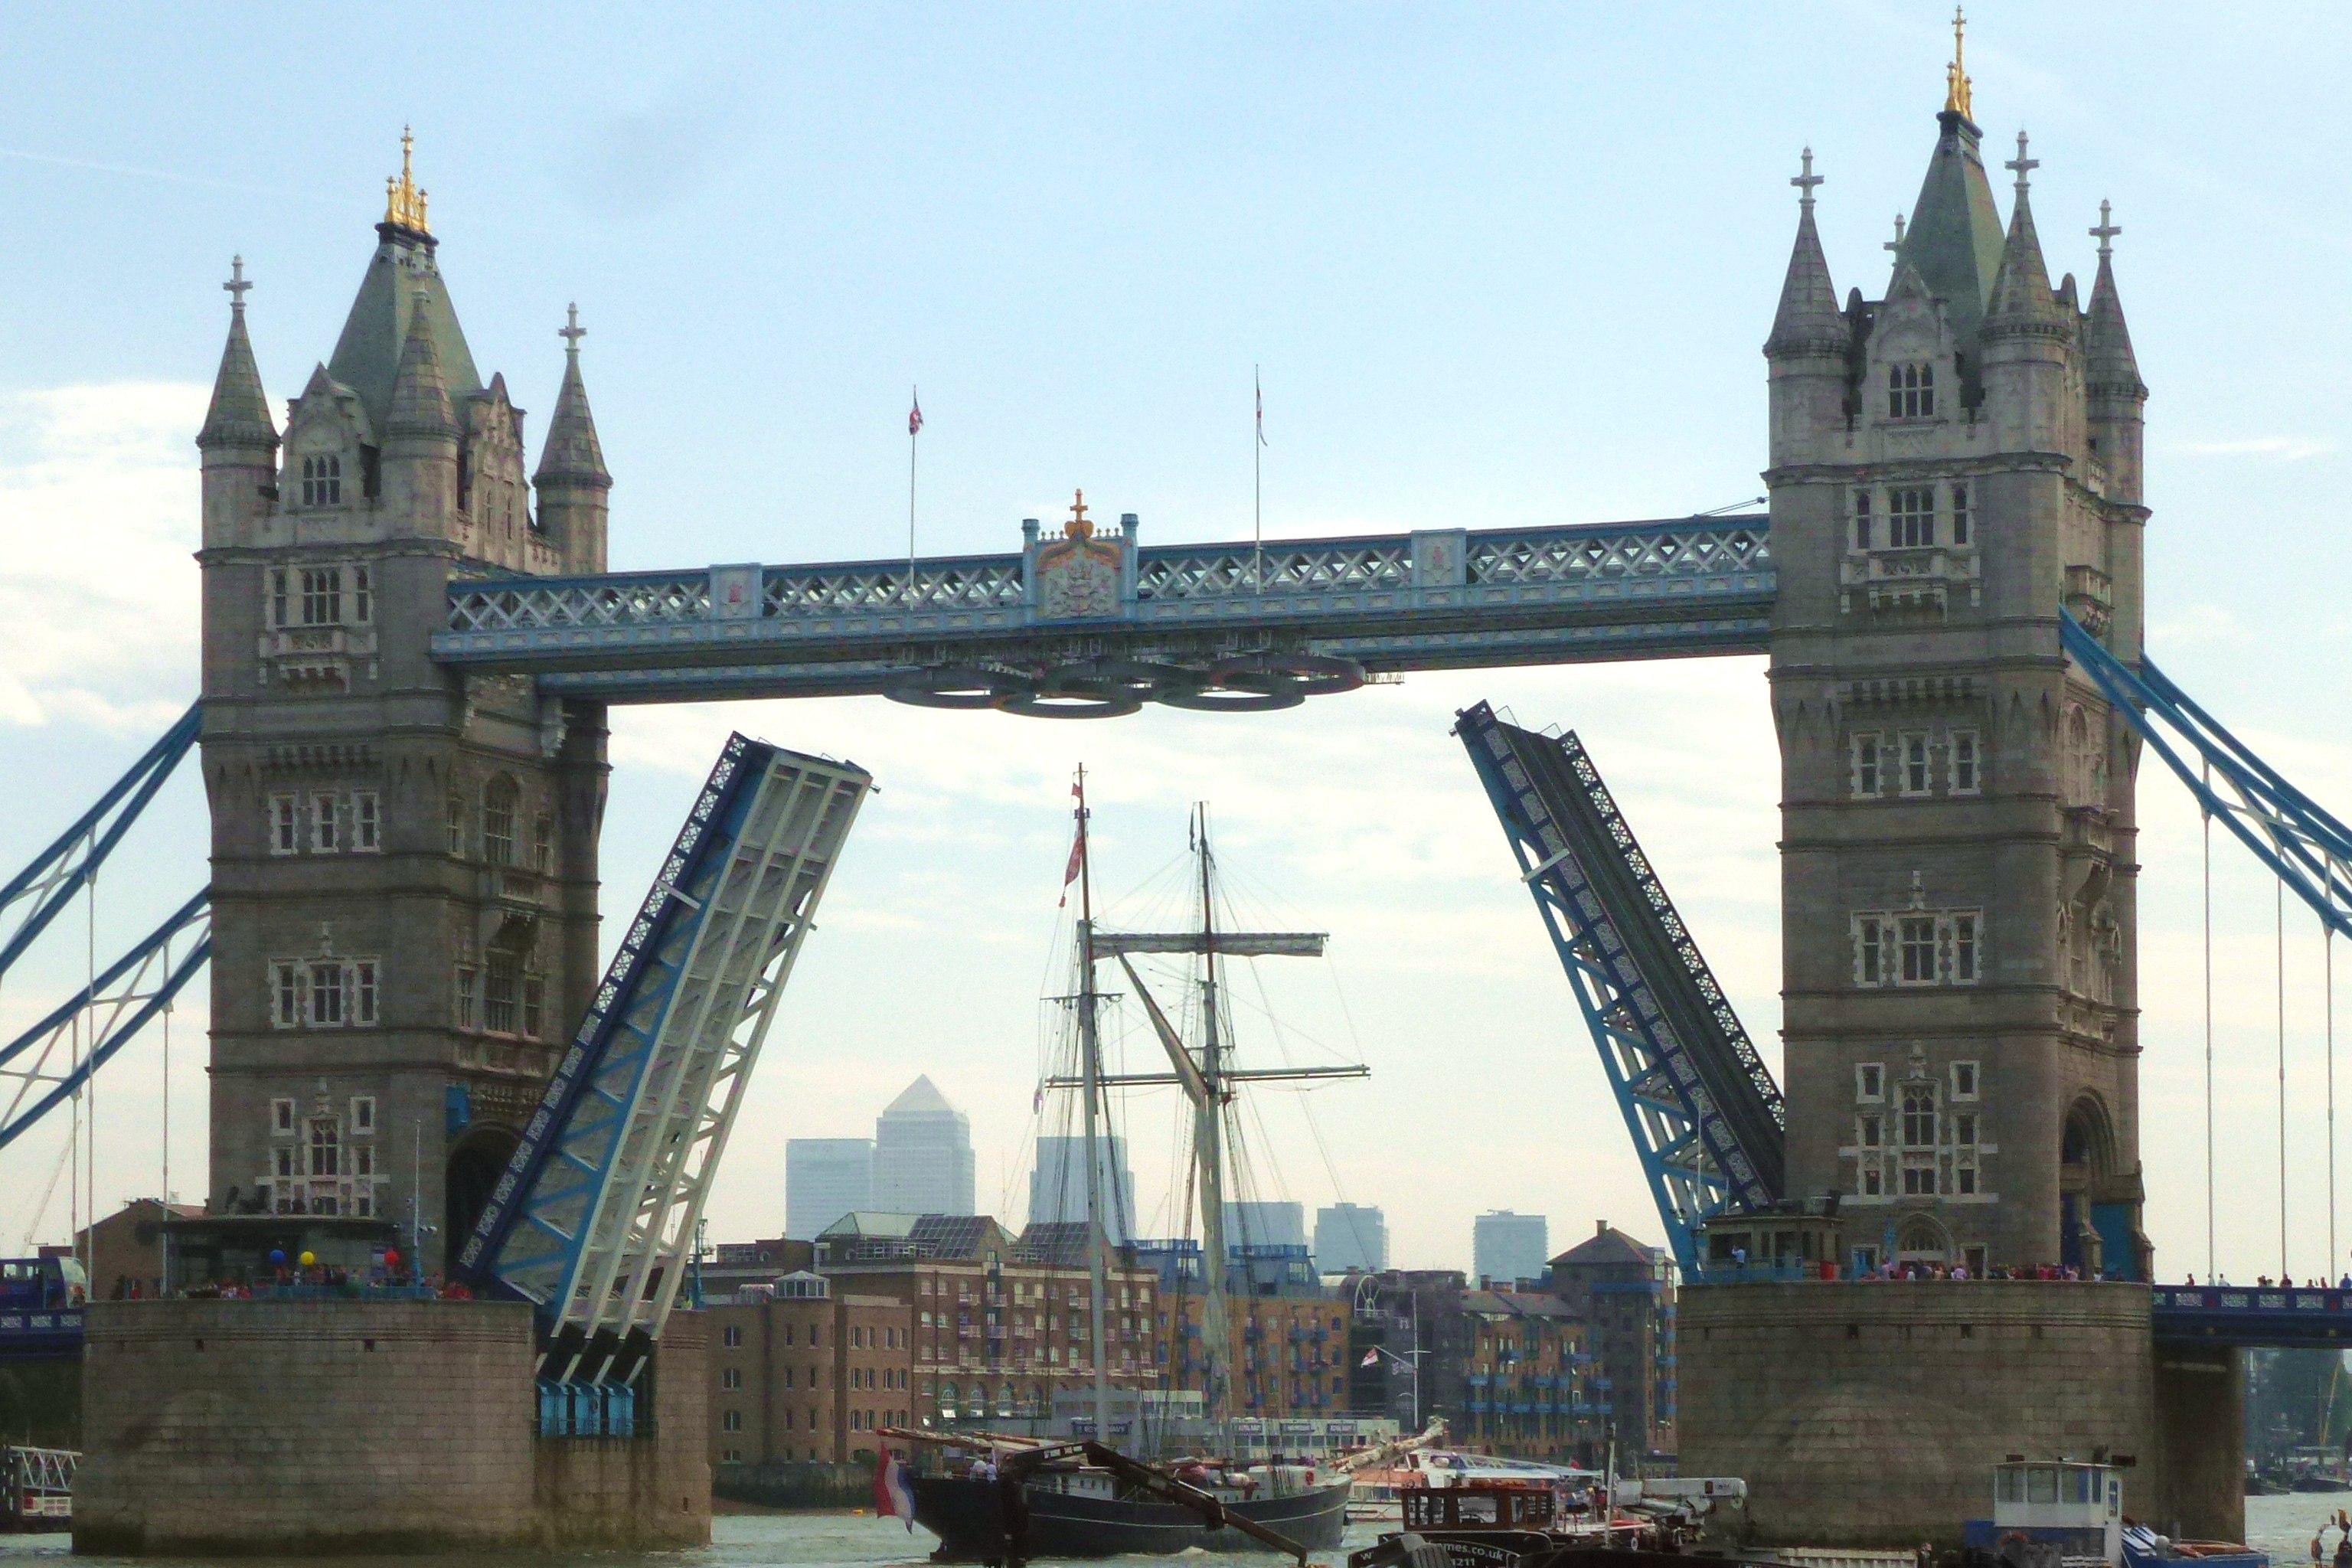 Tower Bridge Exhibition Announces New Tour Dates for 2016